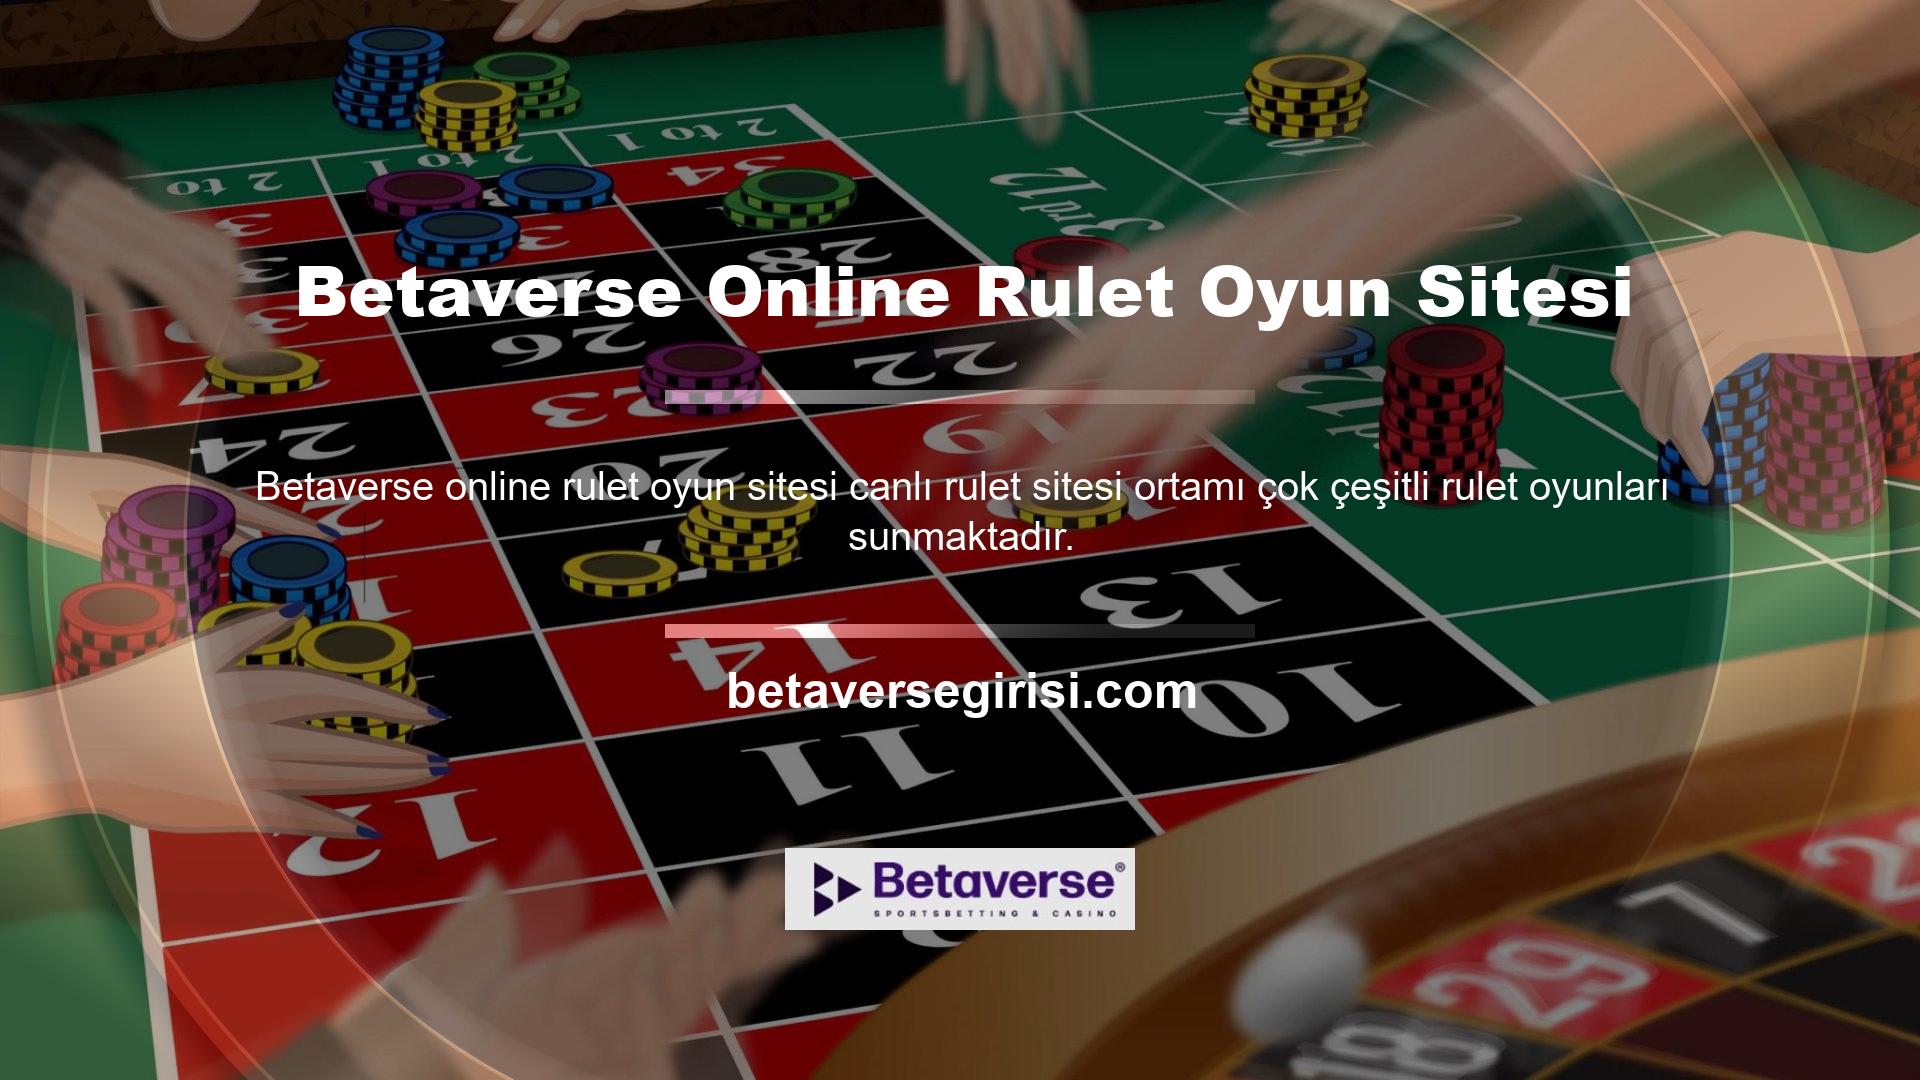 Web sitemizde yer alan Betaverse online rulet oyun sitesinin yeni adresi olan canlı rulet sayfasına ulaşmak ve rulet oyununun keyfini çıkarmak için öncelikle kayıt işlemini tamamlamanız gerekmektedir